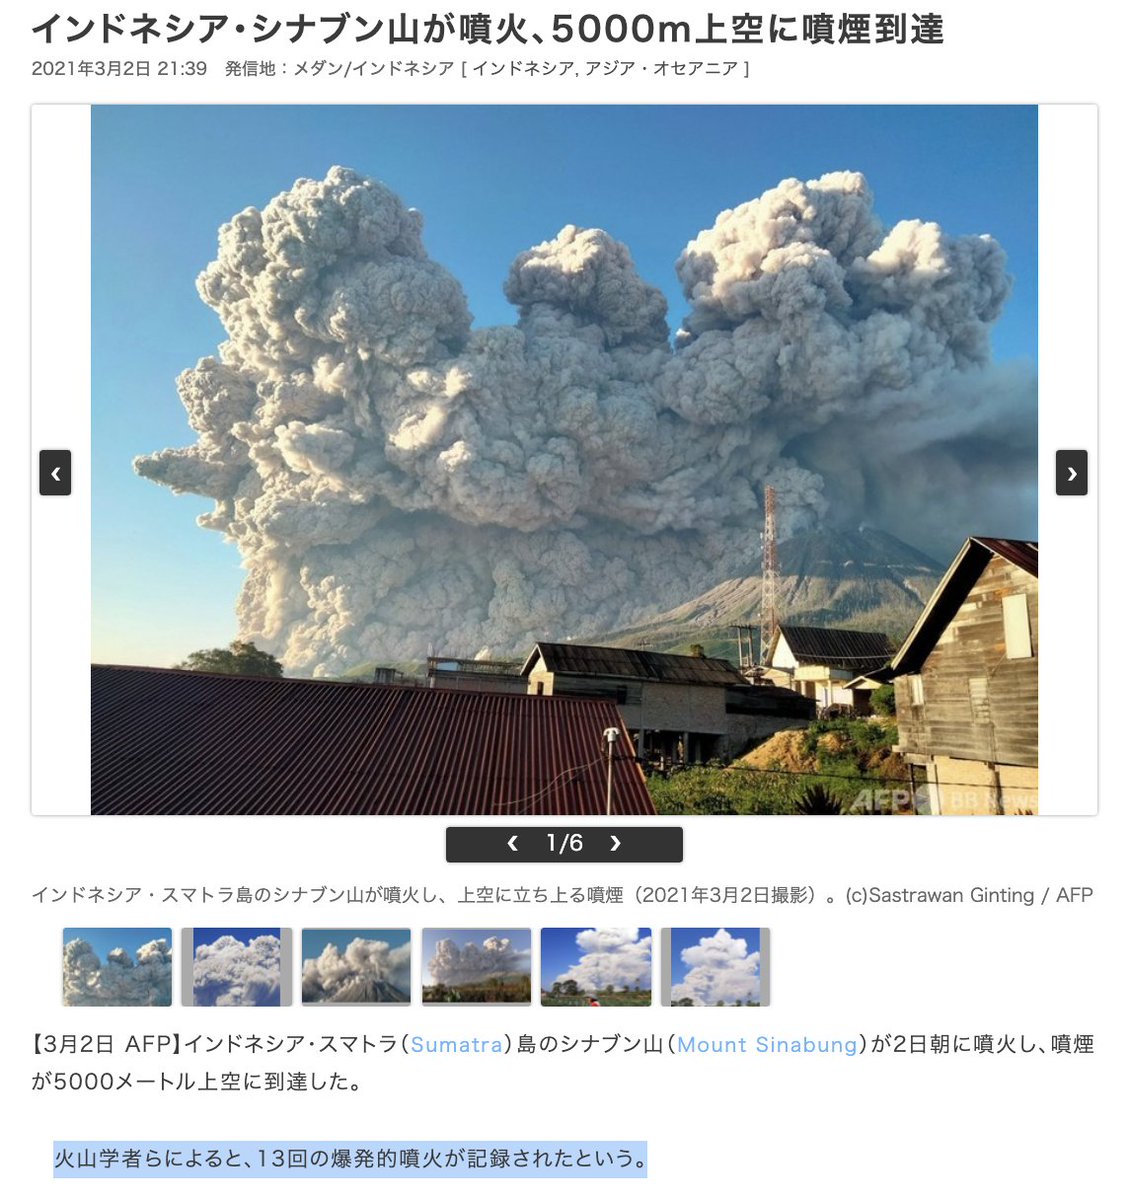 天瀬ひみか 公式 予言コード解説サポート على تويتر インドネシア シナブン山が噴火 5000m上空に噴煙到達 インドネシア スマトラ島の シナブン山が2日朝に噴火し 噴煙が5000メートル上空に到達した 火山学者らによると 13回の爆発的噴火が記録されたという